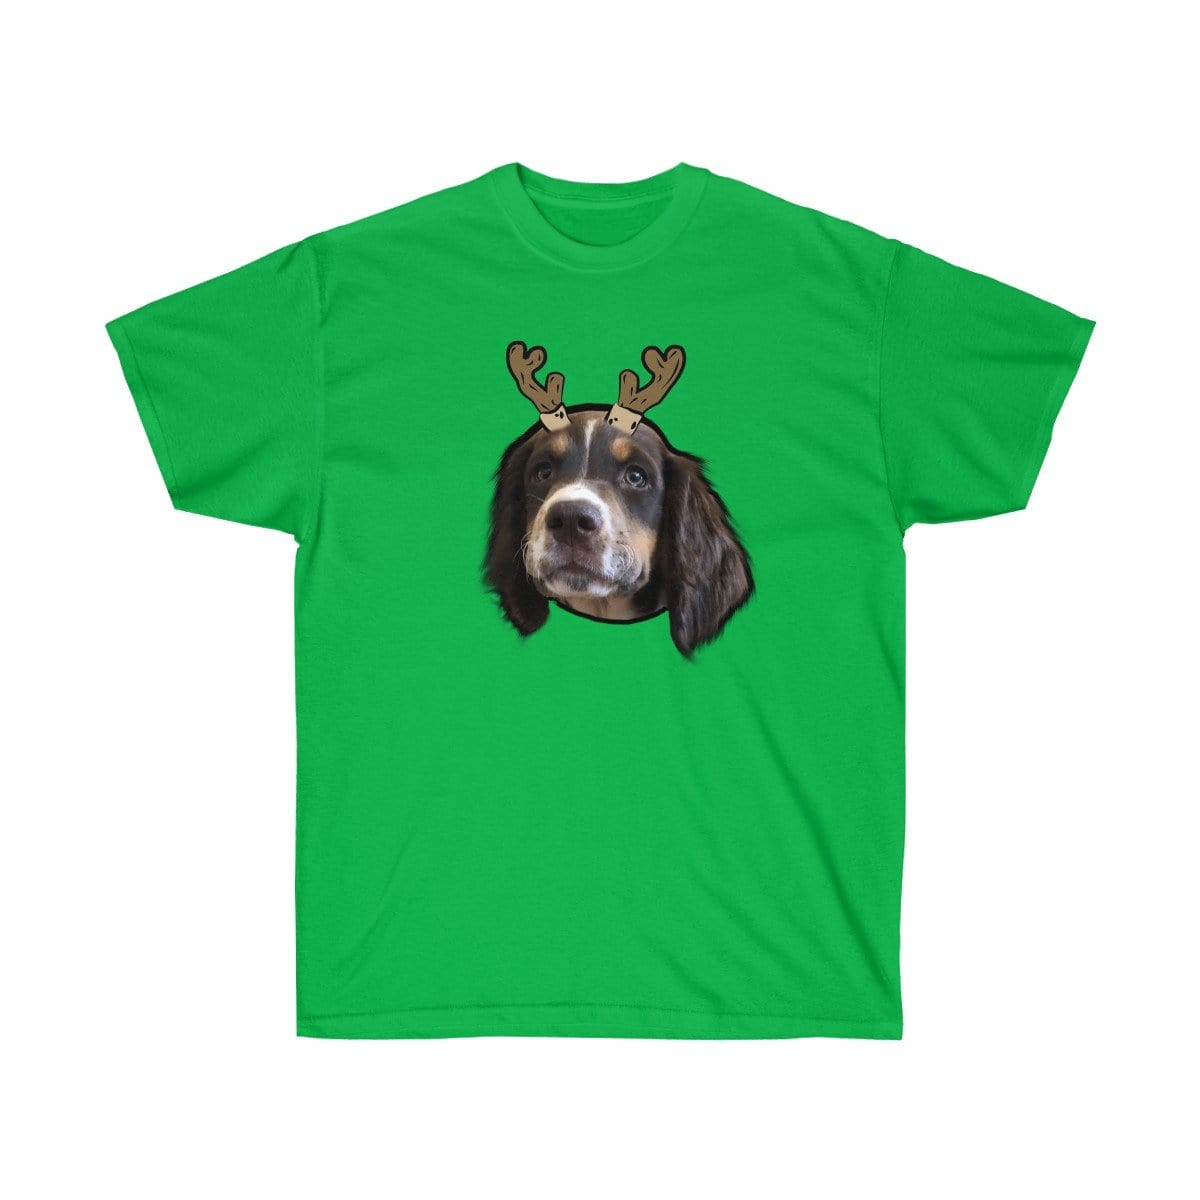 Novelty Pet Face Christmas T-Shirt